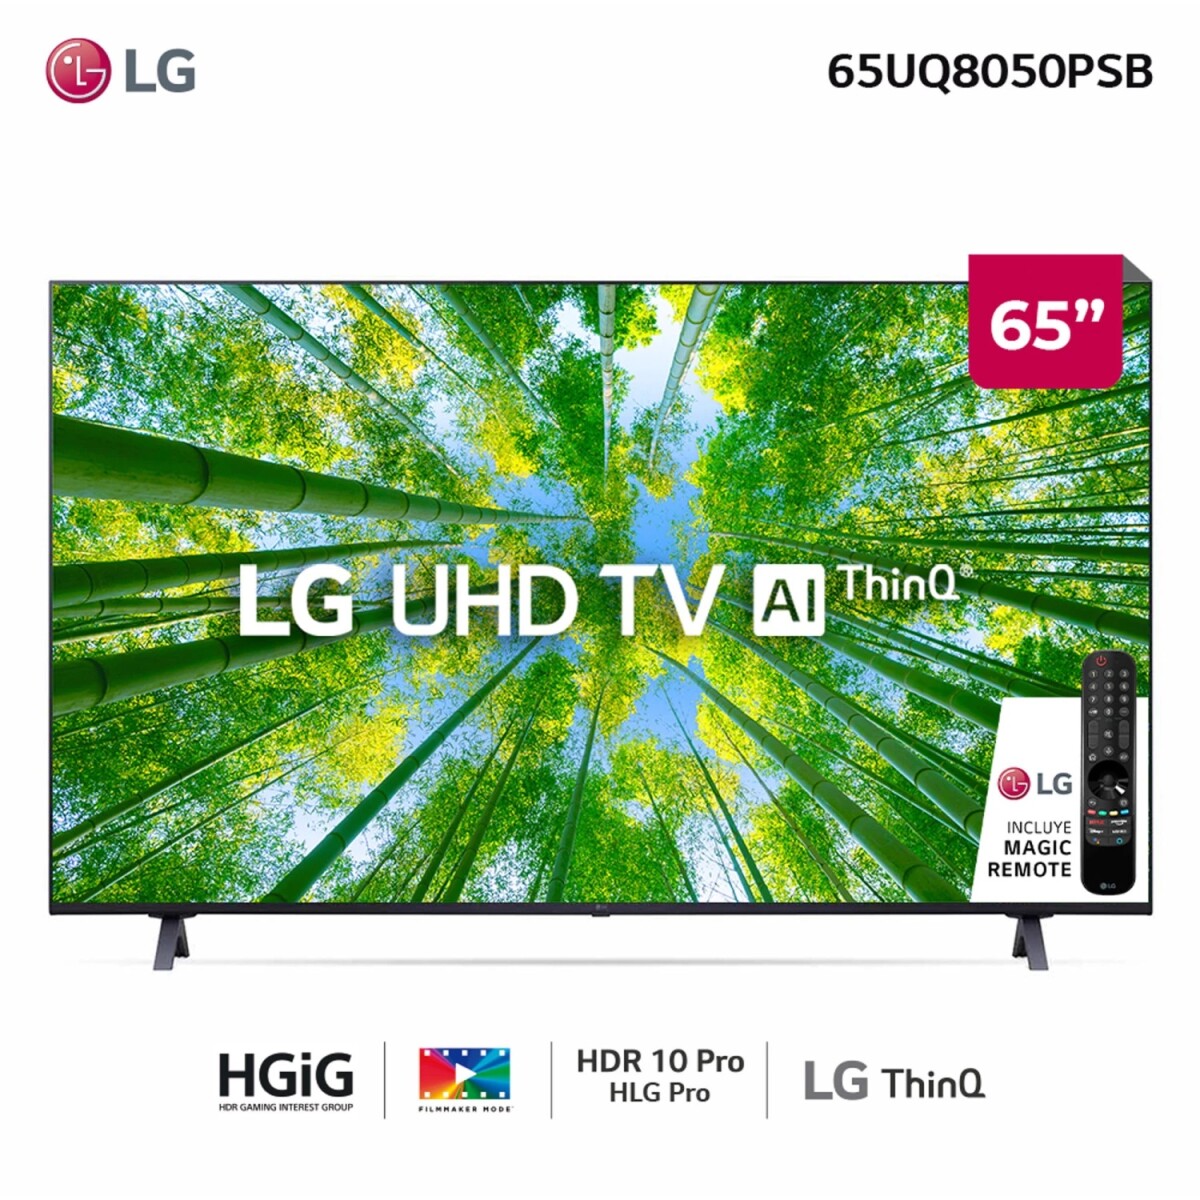 Tv LG UHD 4K 65" 65UR8750PSA Al Smart TV - Unica 